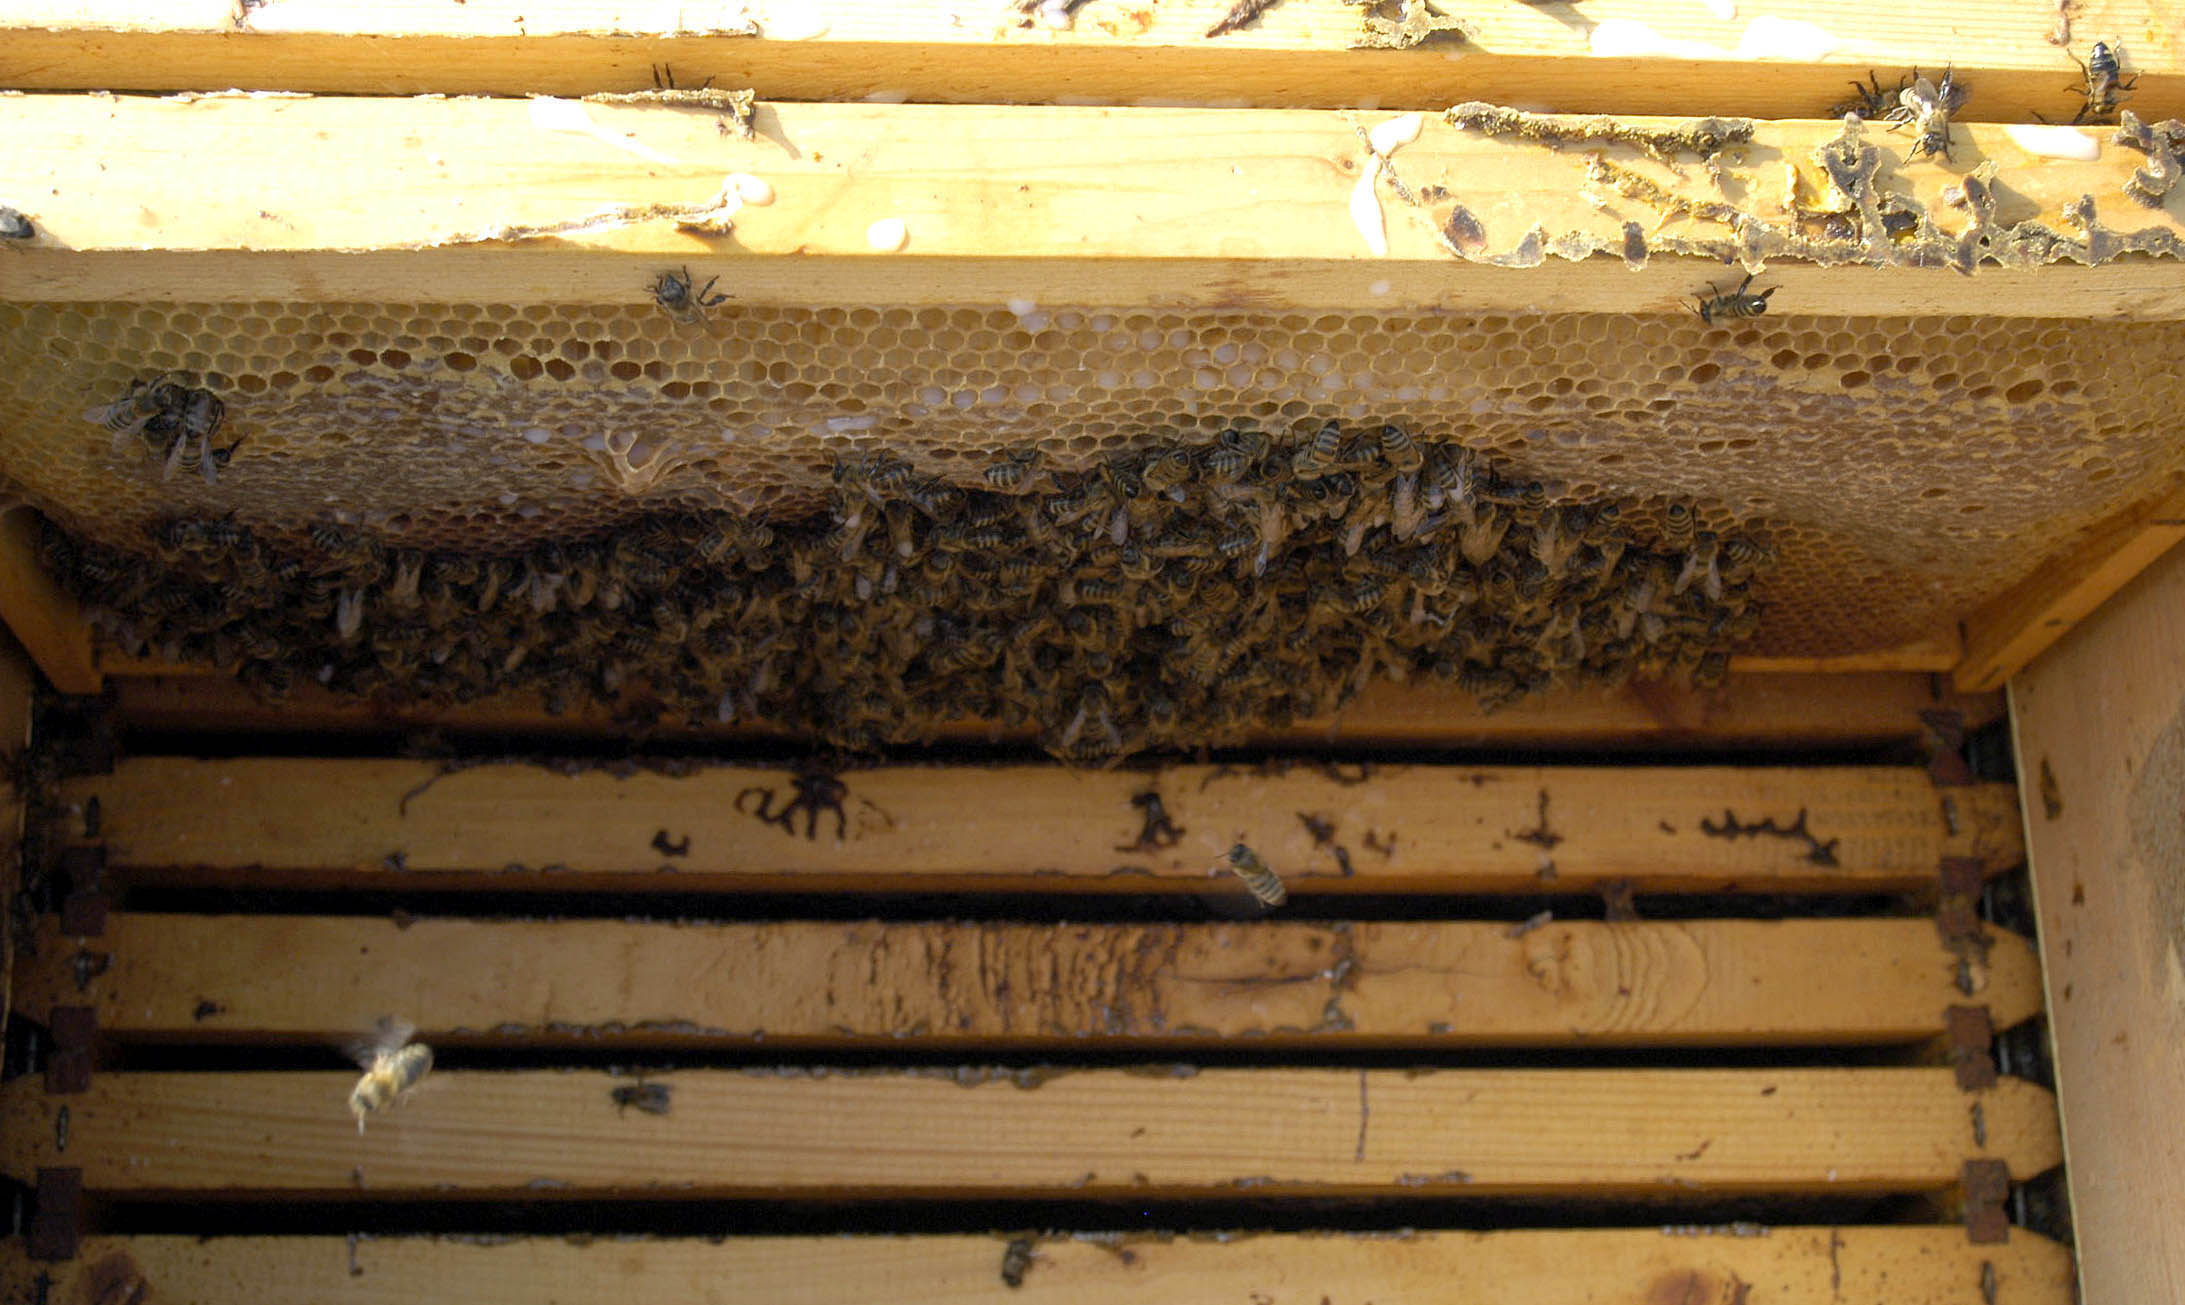 Μυτιλήνη: Σμήνος από μέλισσες επιτέθηκε σε επιβάτες αυτοκινήτου, πληροφορίες για άτομο χωρίς αισθήσεις